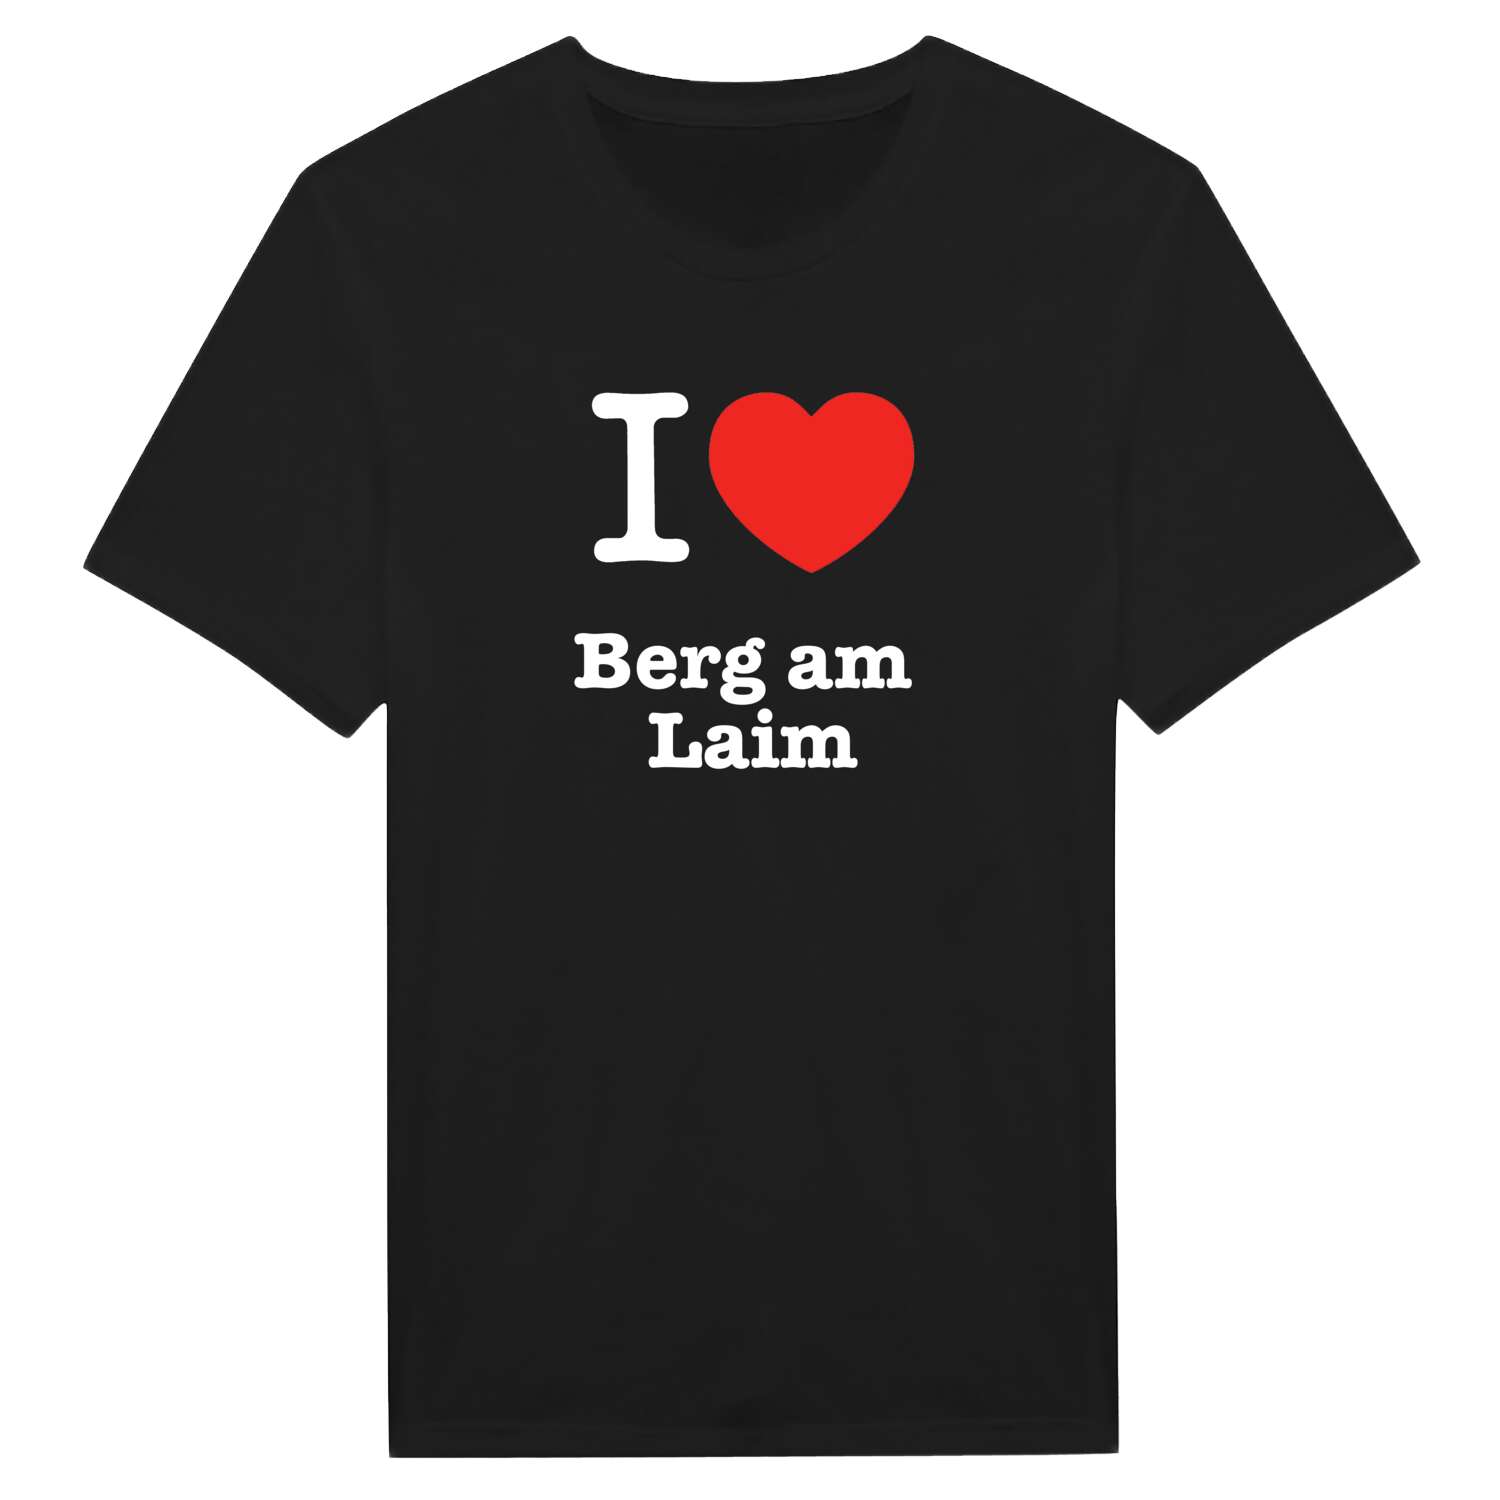 Berg am Laim T-Shirt »I love«